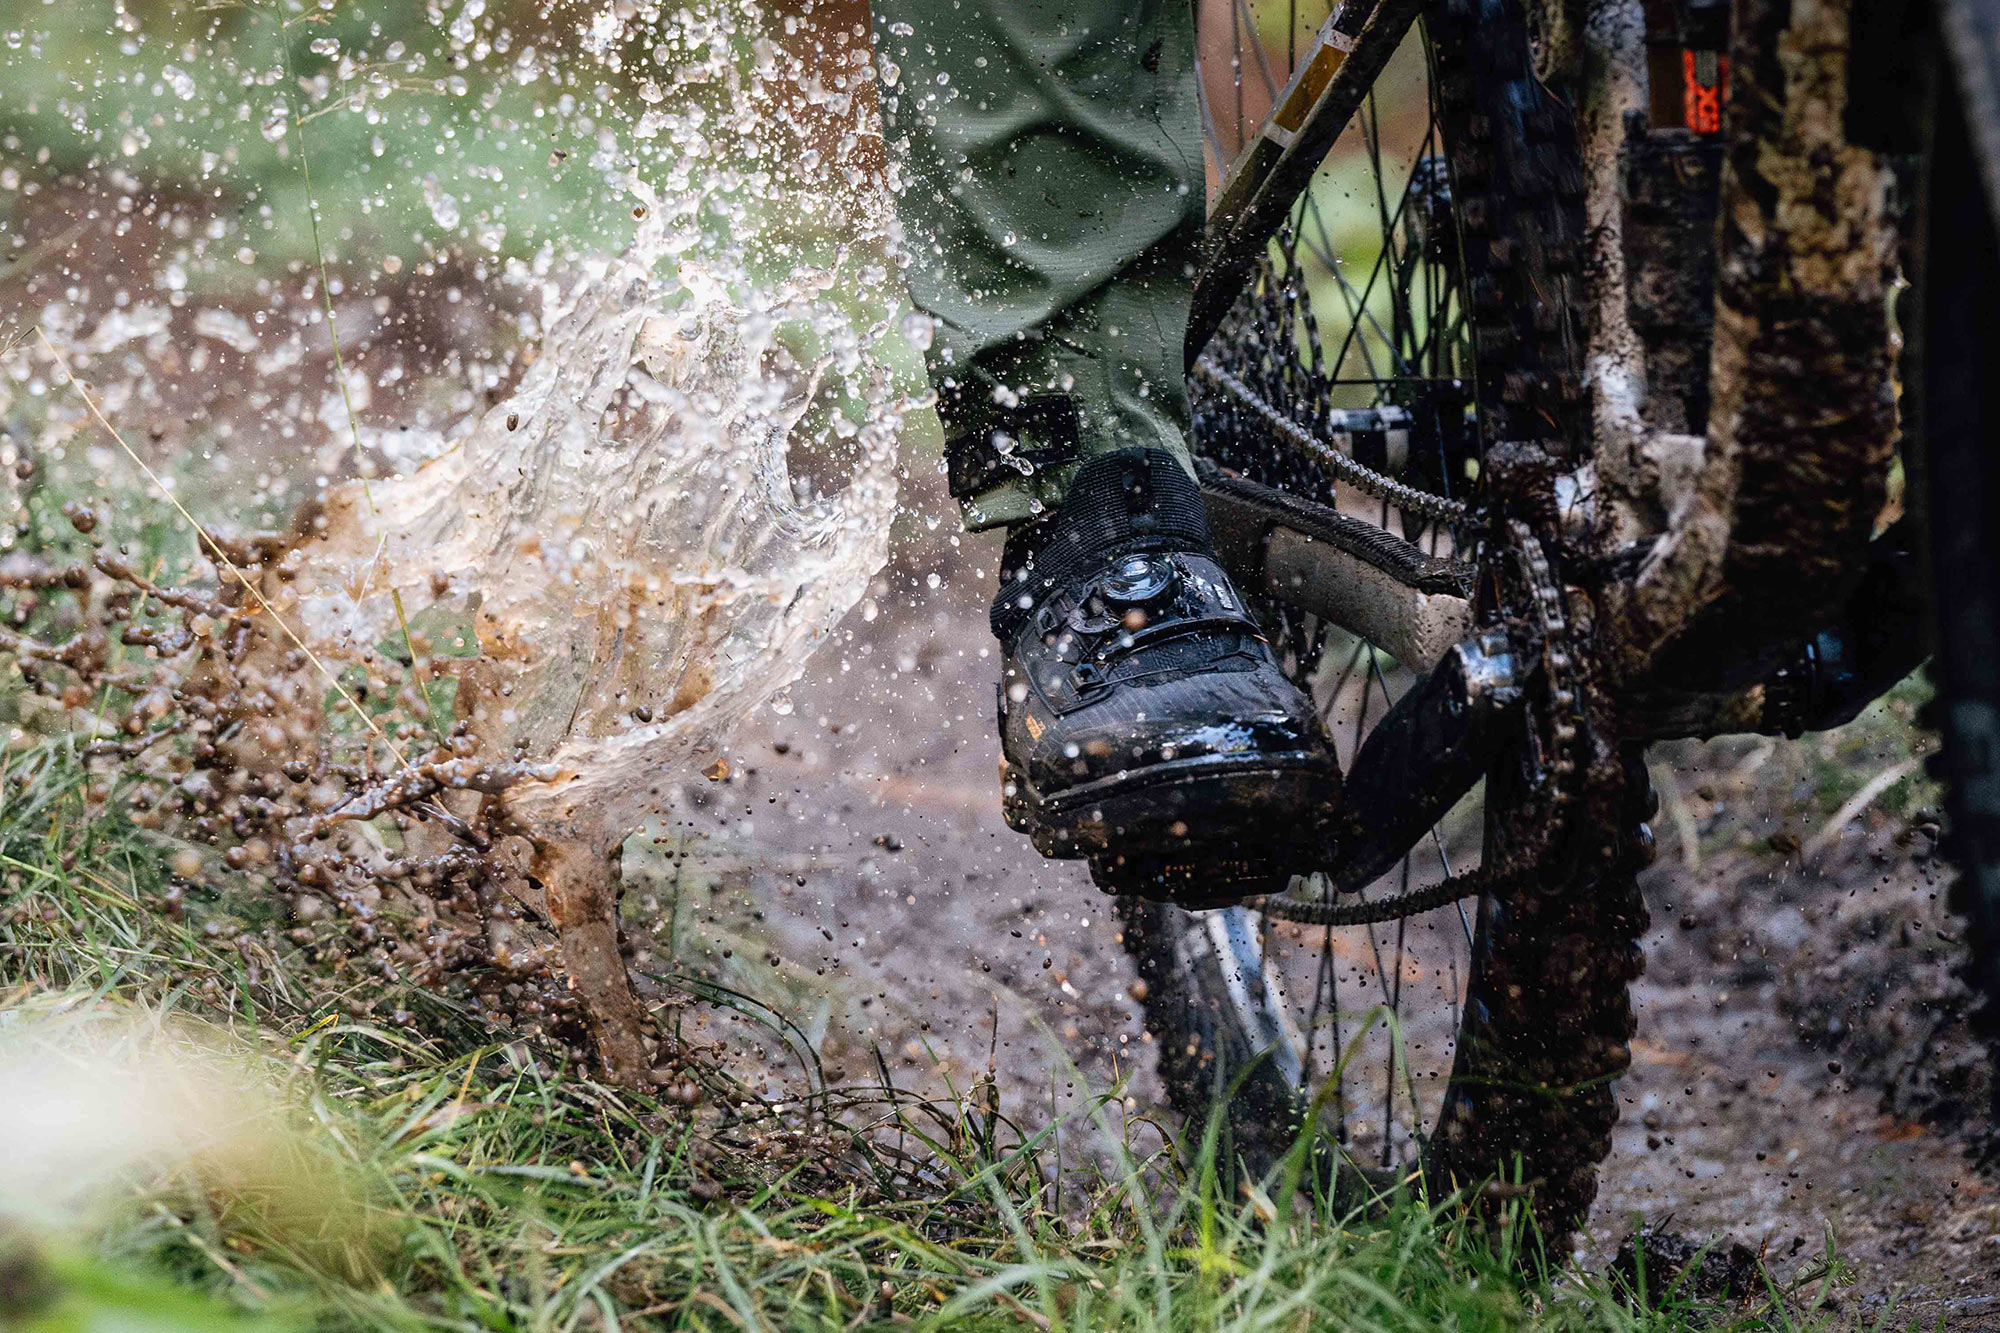 leatt HydraDri waterproof mountain bike shoes being ridden